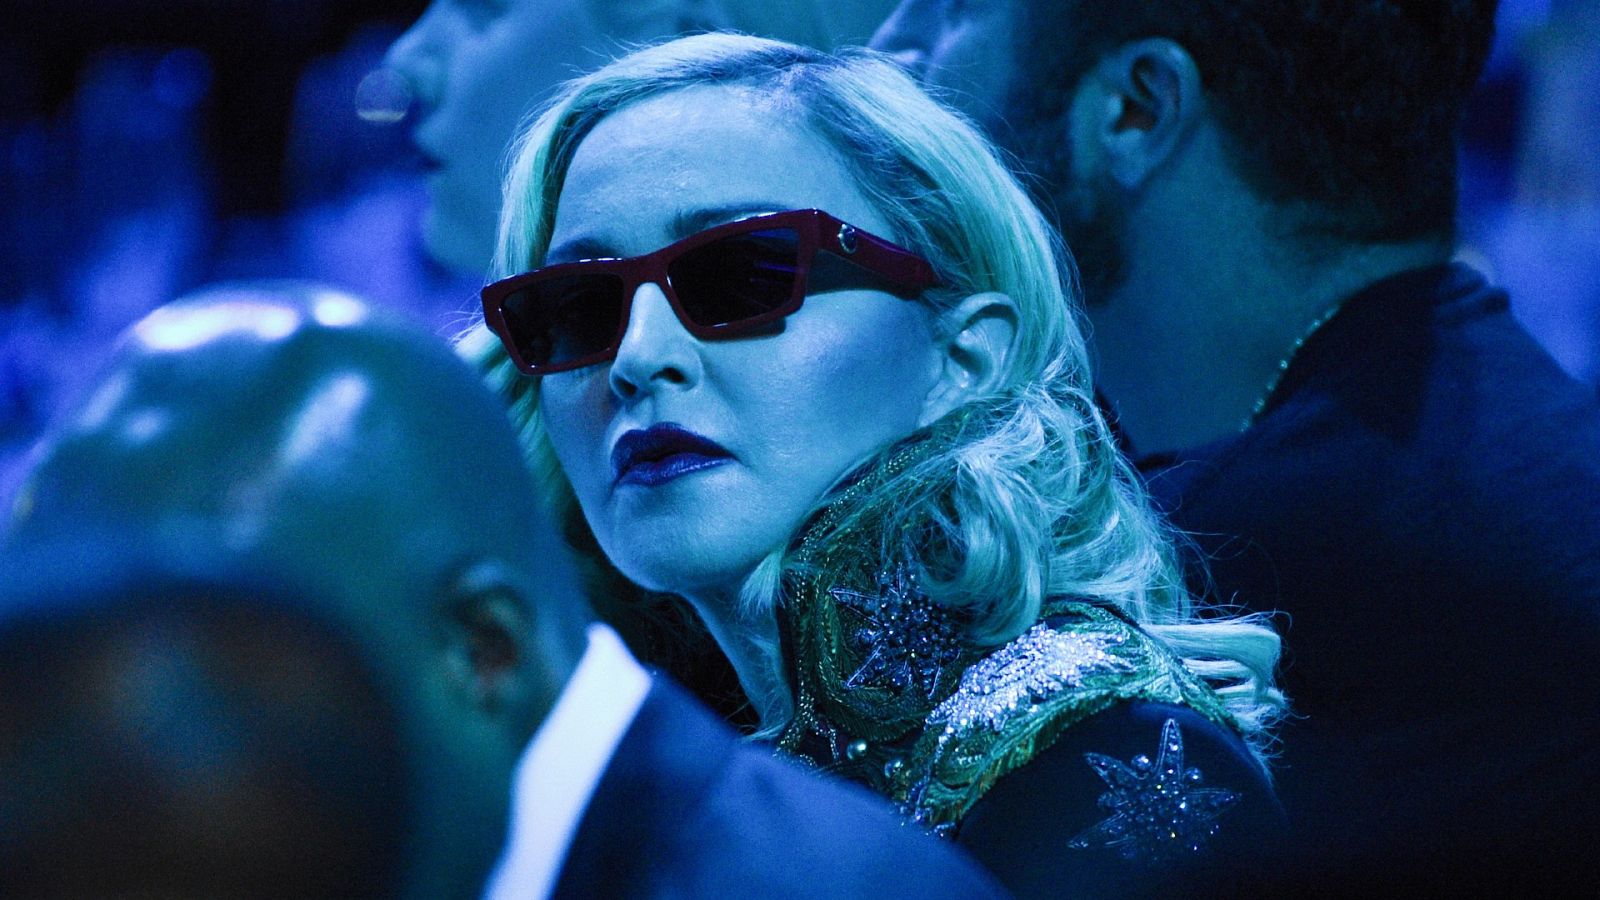 Madonna se ve envuelta en el escándalo de plagio más curioso hasta la fecha